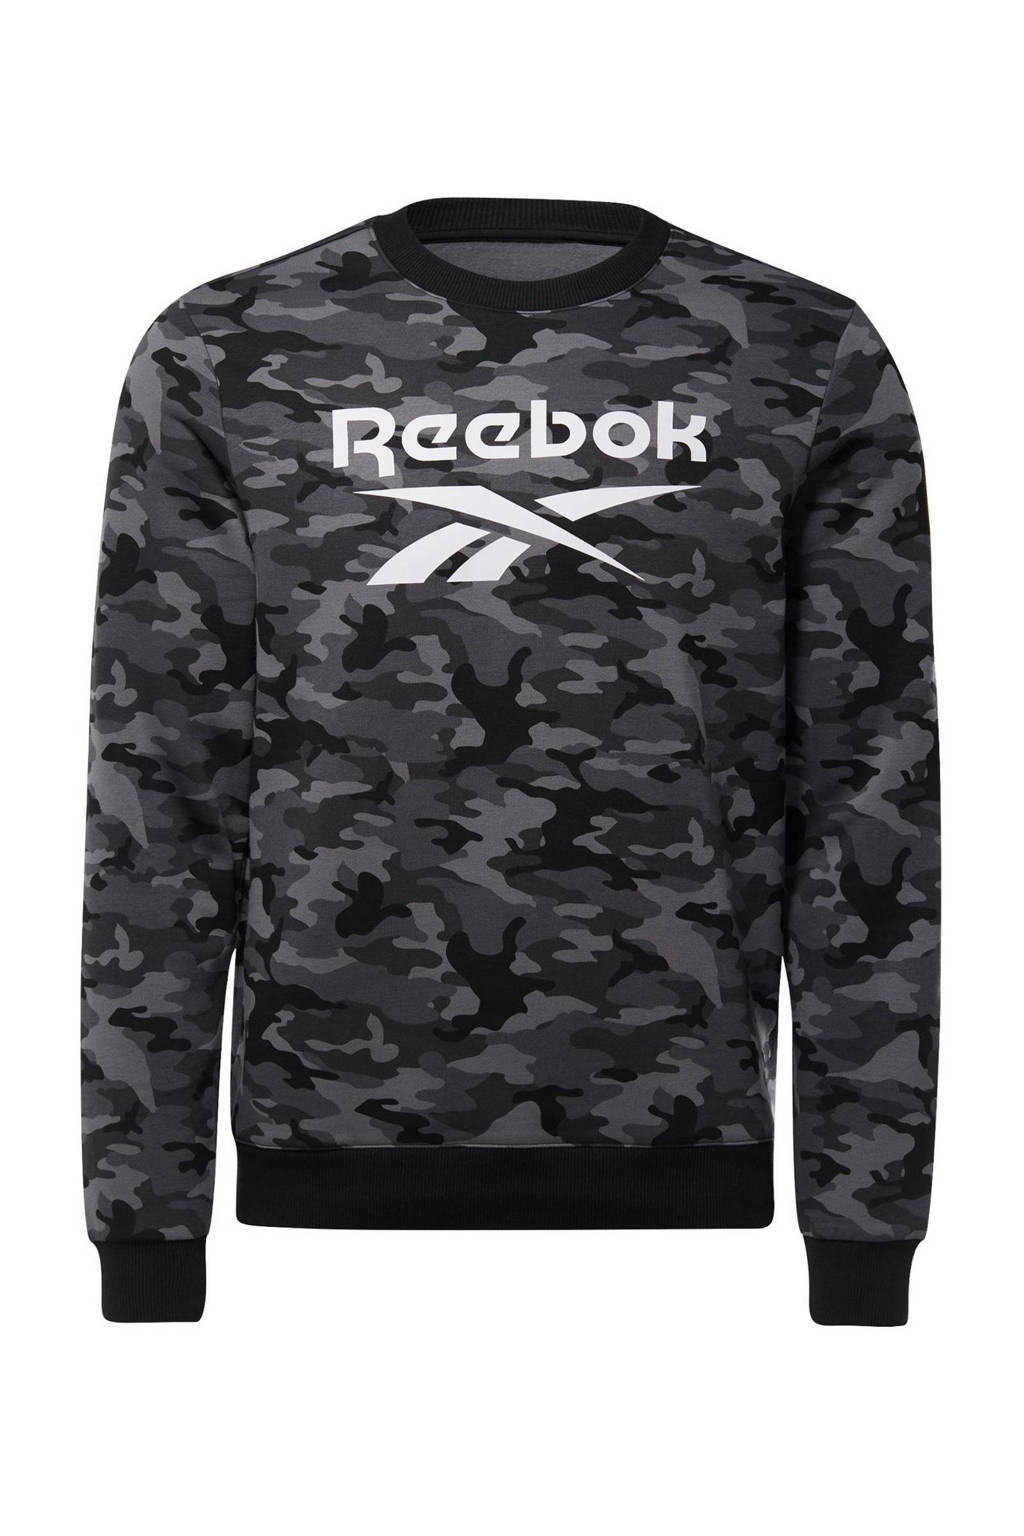 Grijs en zwarte heren Reebok Training sportsweater van katoen met camouflageprint, lange mouwen en ronde hals